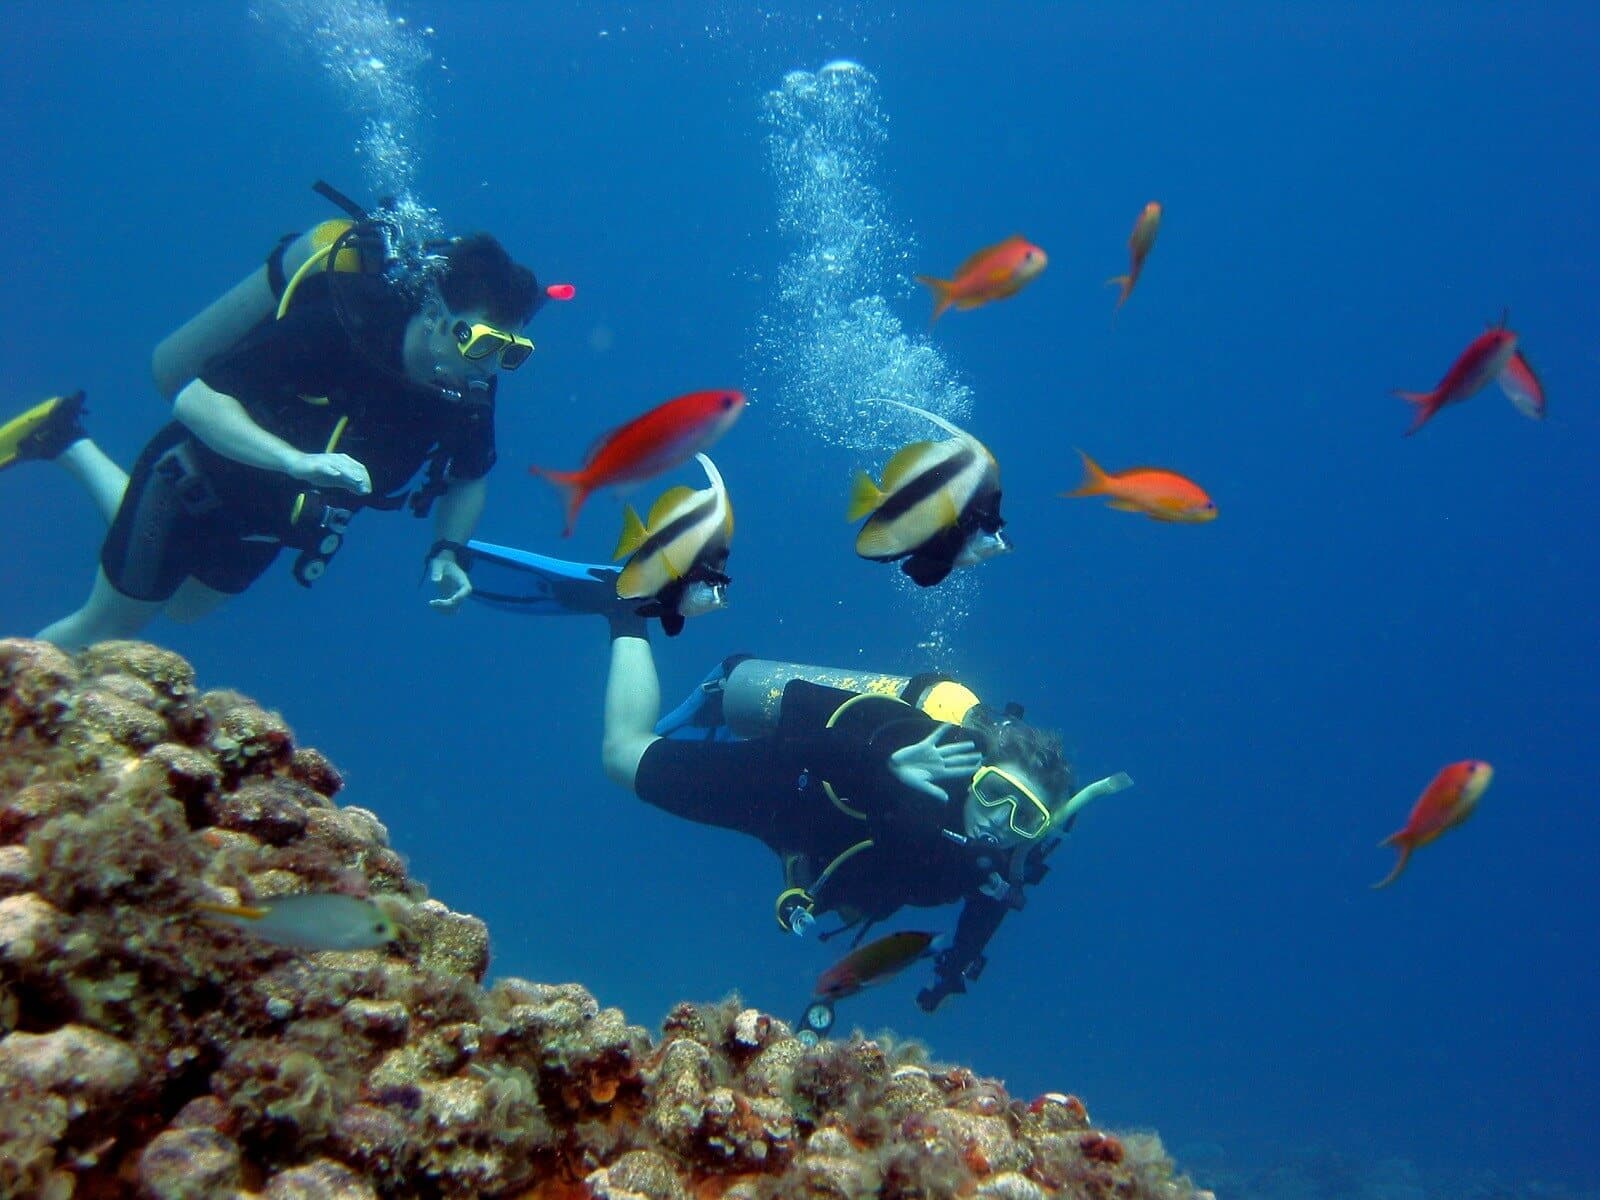 Two divers explore the deep sea in Trincomalee Sri Lanka